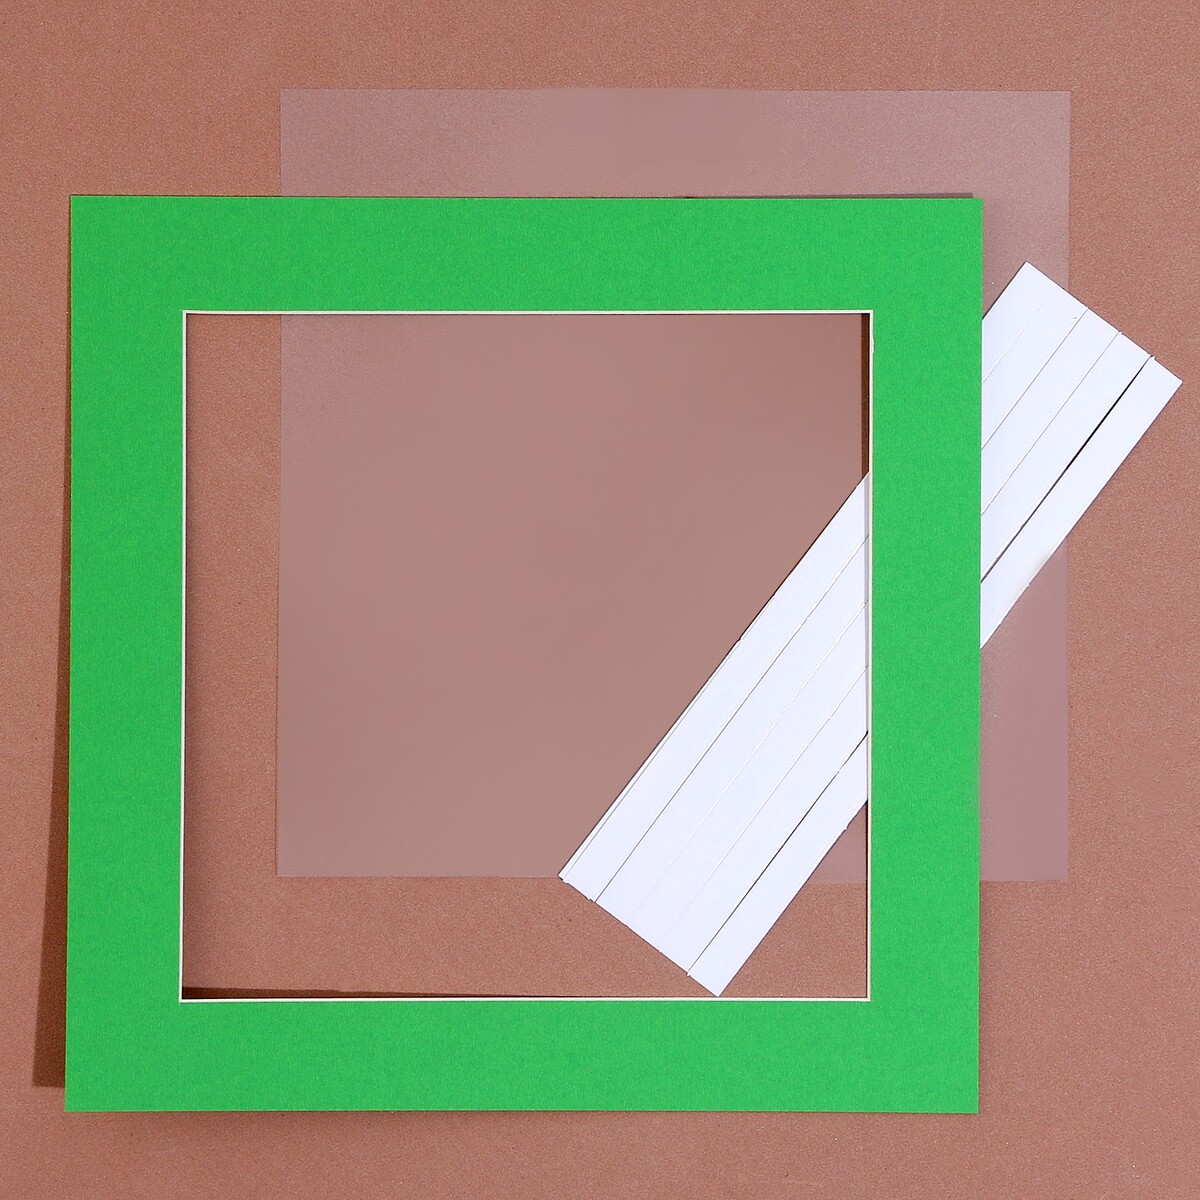 Паспарту размер рамки 24 × 24 см, прозрачный лист, клейкая лента, цвет зеленый паспарту размер рамки 35 × 26 см прозрачный лист клейкая лента белый